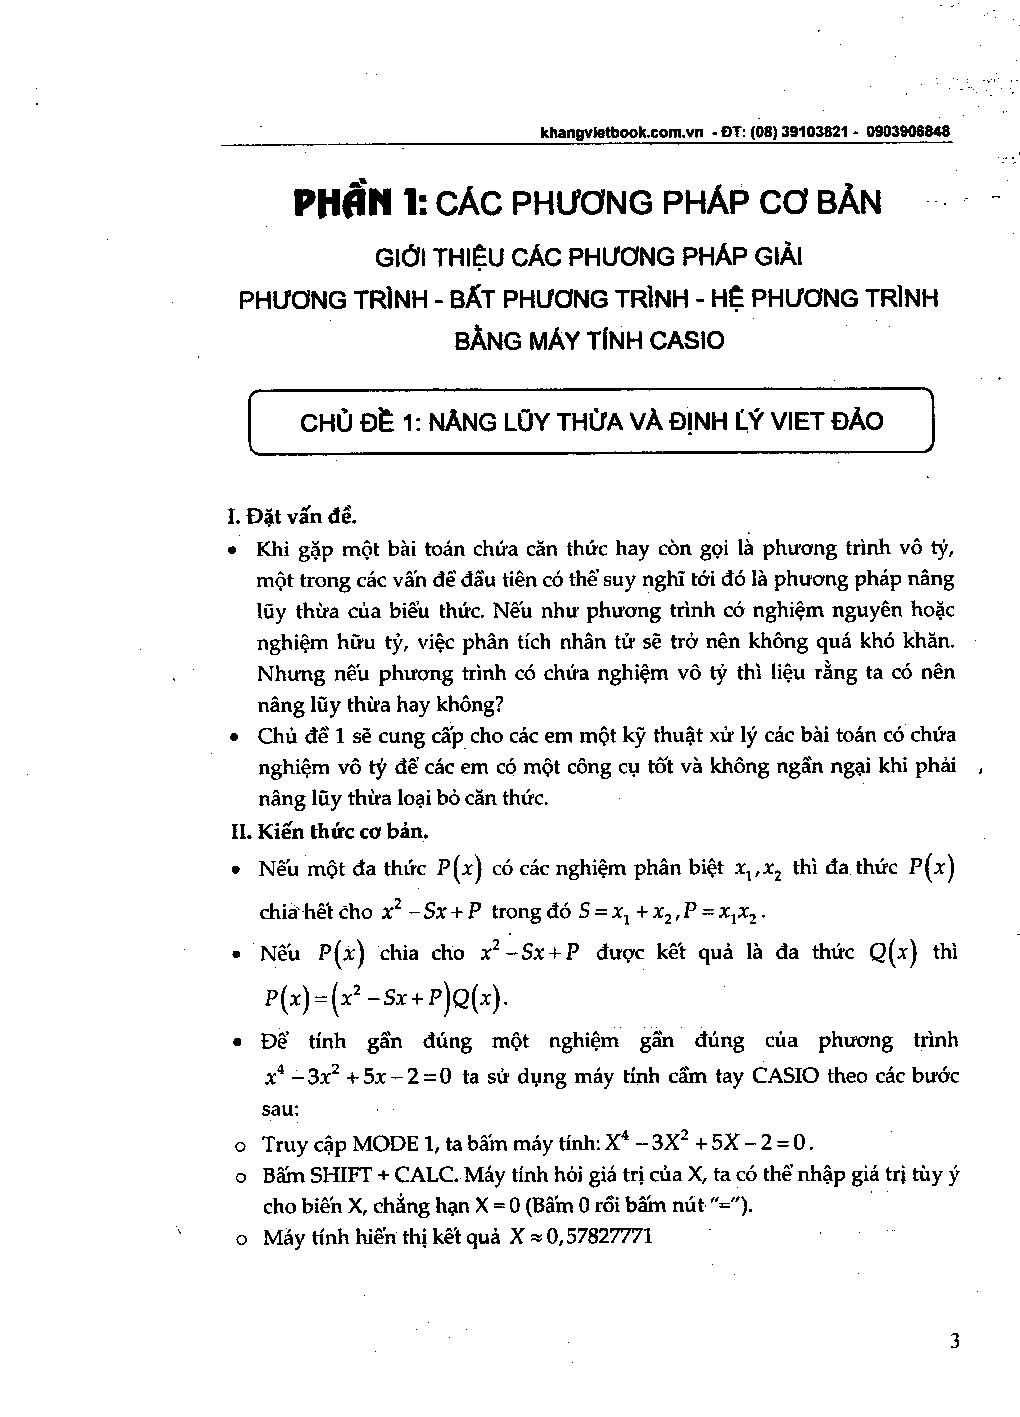 Phương pháp giải PT – Hệ PT – Bất PT bằng máy tính Casio (trang 3)